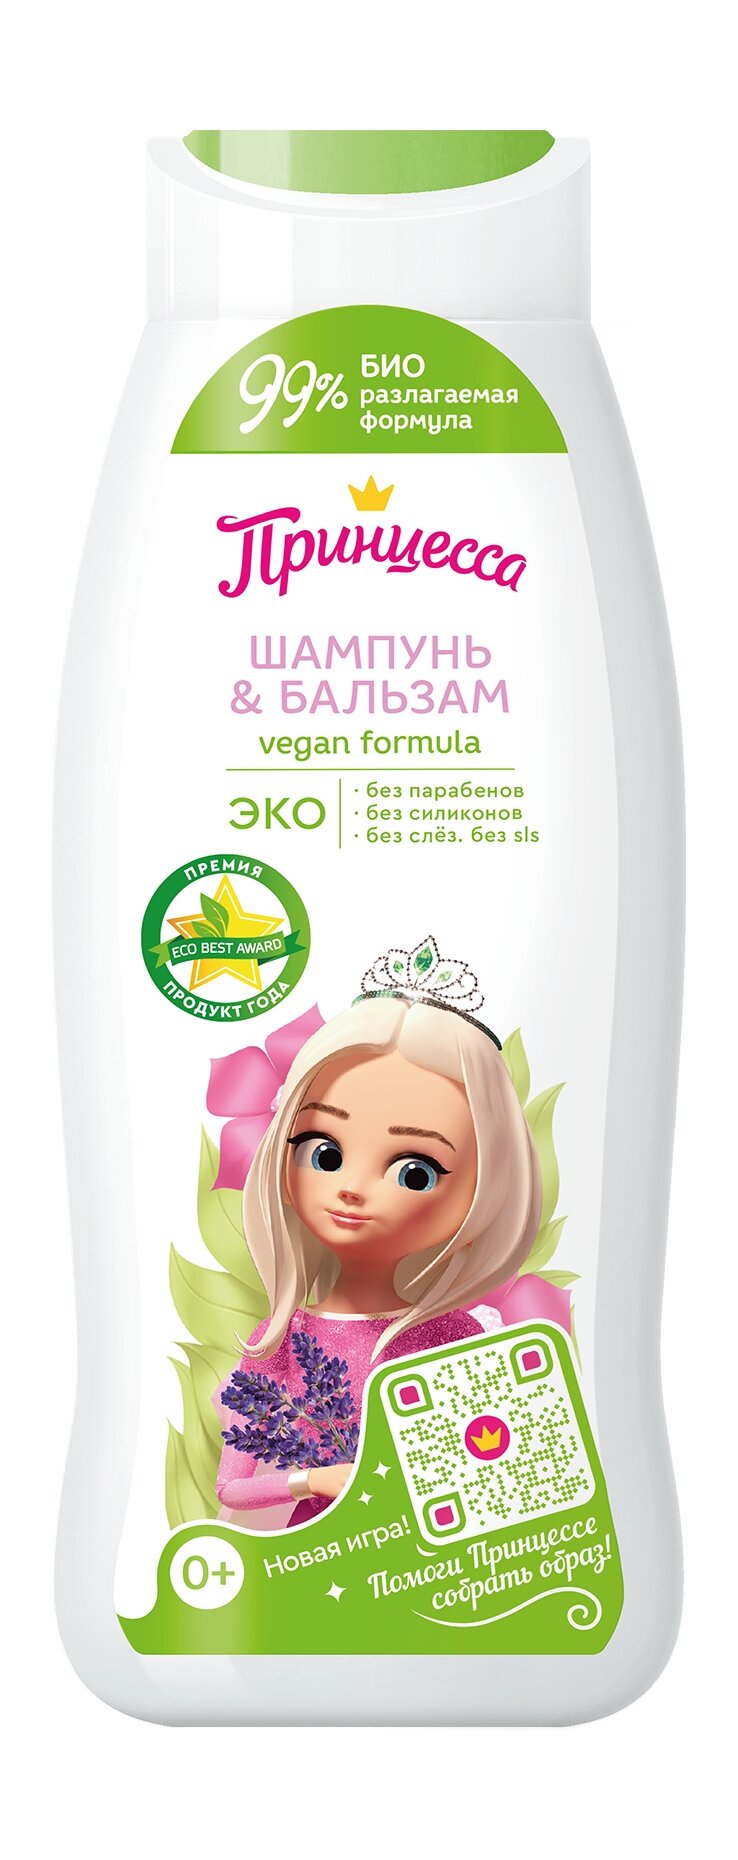 Принцесса Детский шампунь-бальзам для волос Для всей семьи 0+, 400 мл